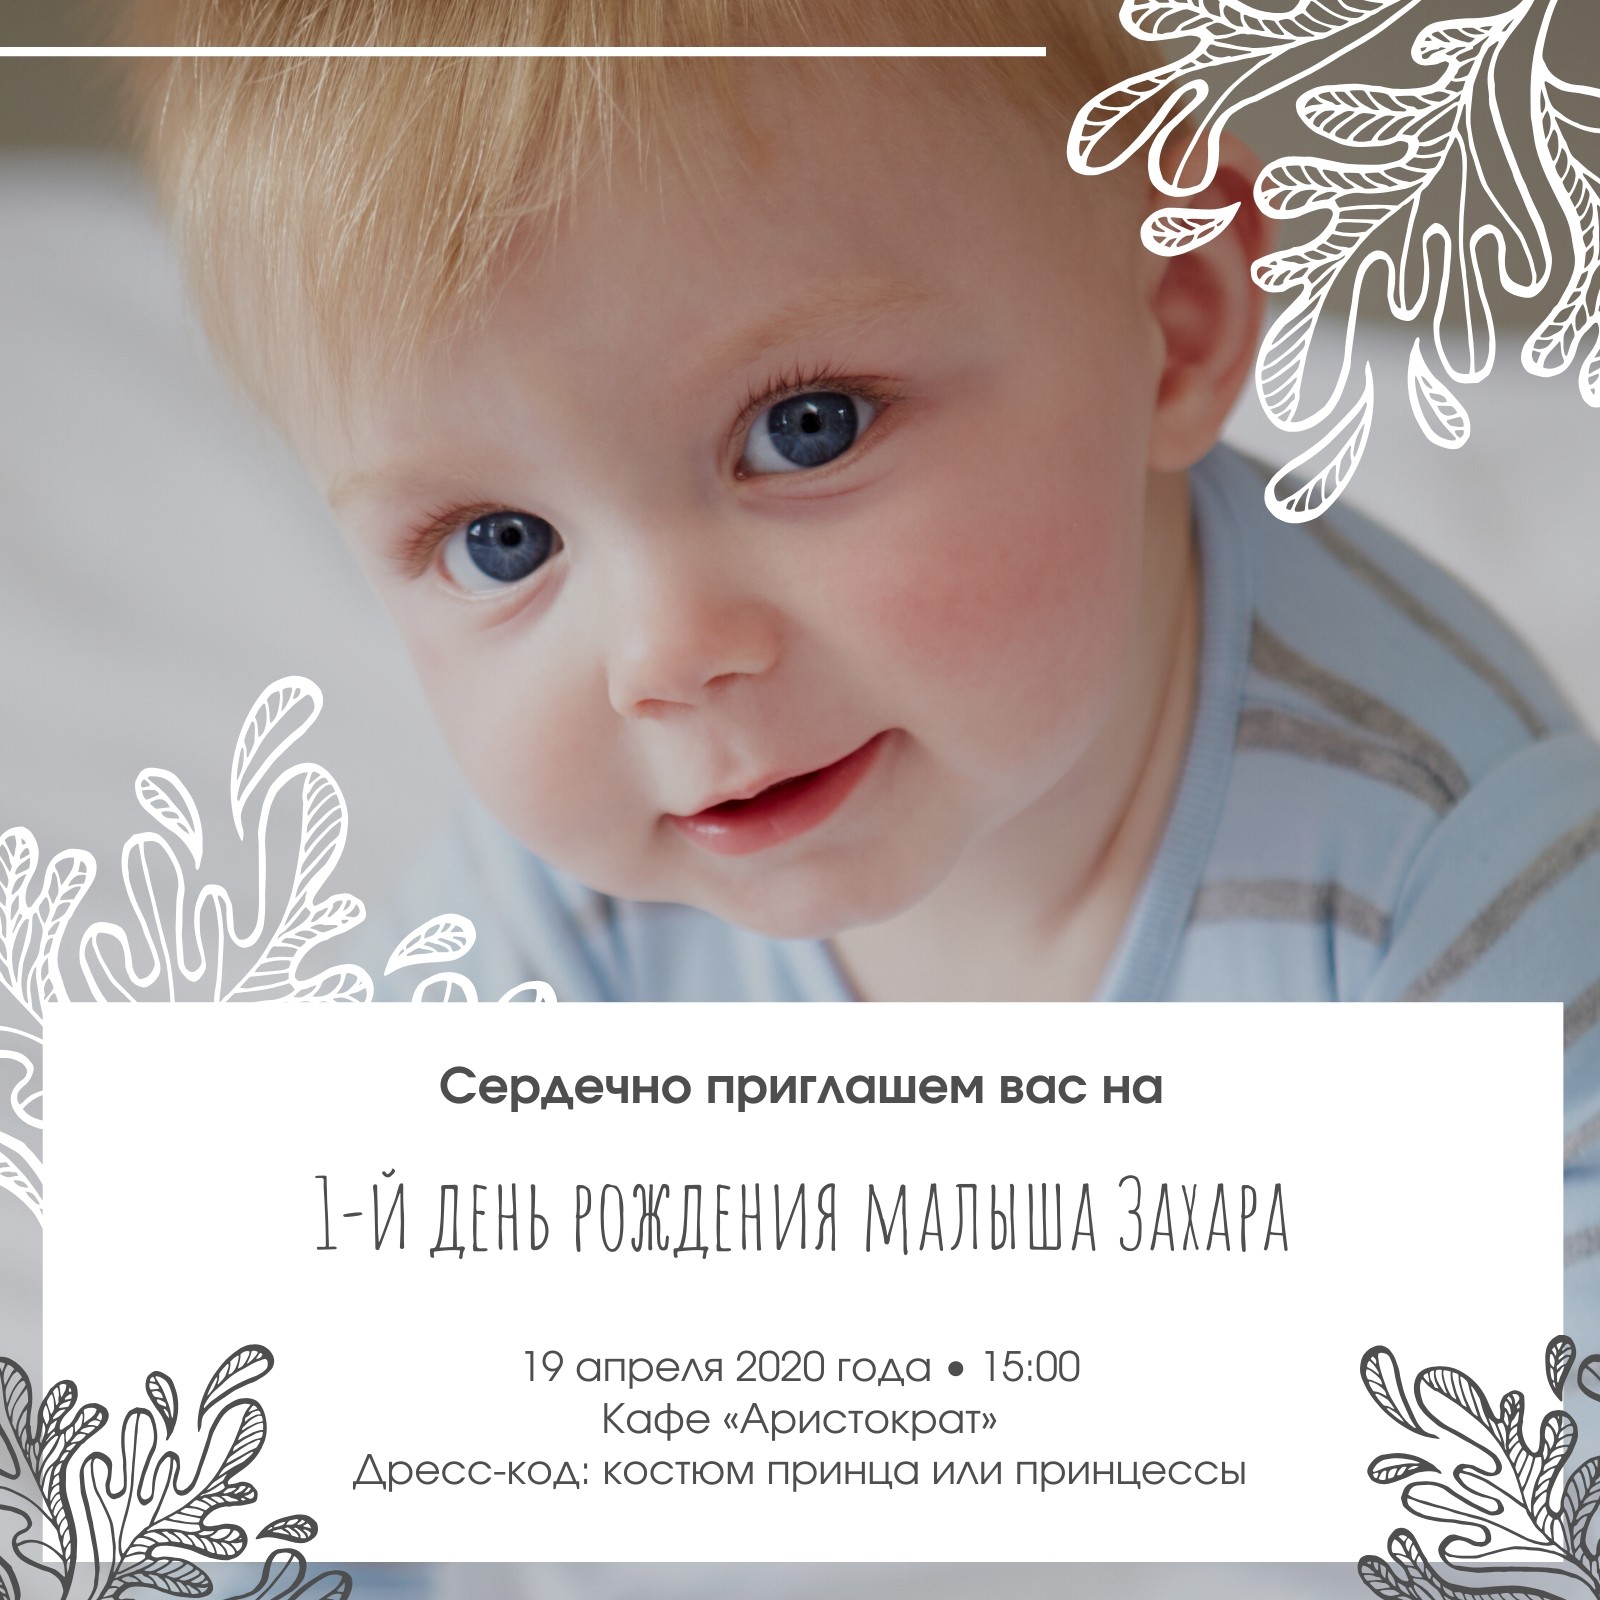 Бесплатные шаблоны приглашений на первый день рождения ребенка | Скачать  дизайн и макет пригласительных на один годик онлайн | Canva